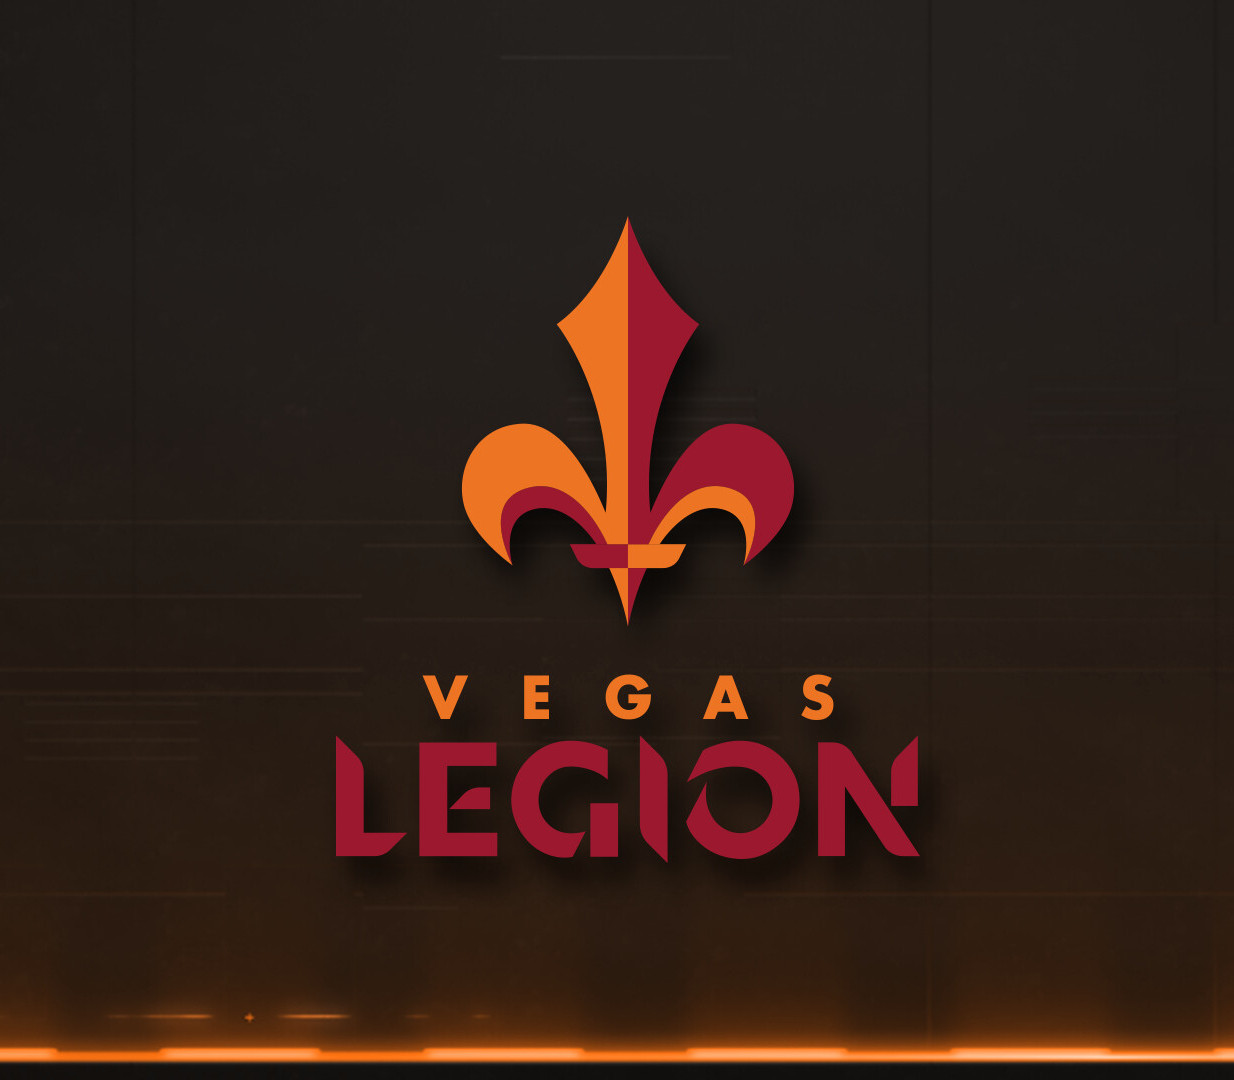 Watch Dogs: Legion Steam Altergift